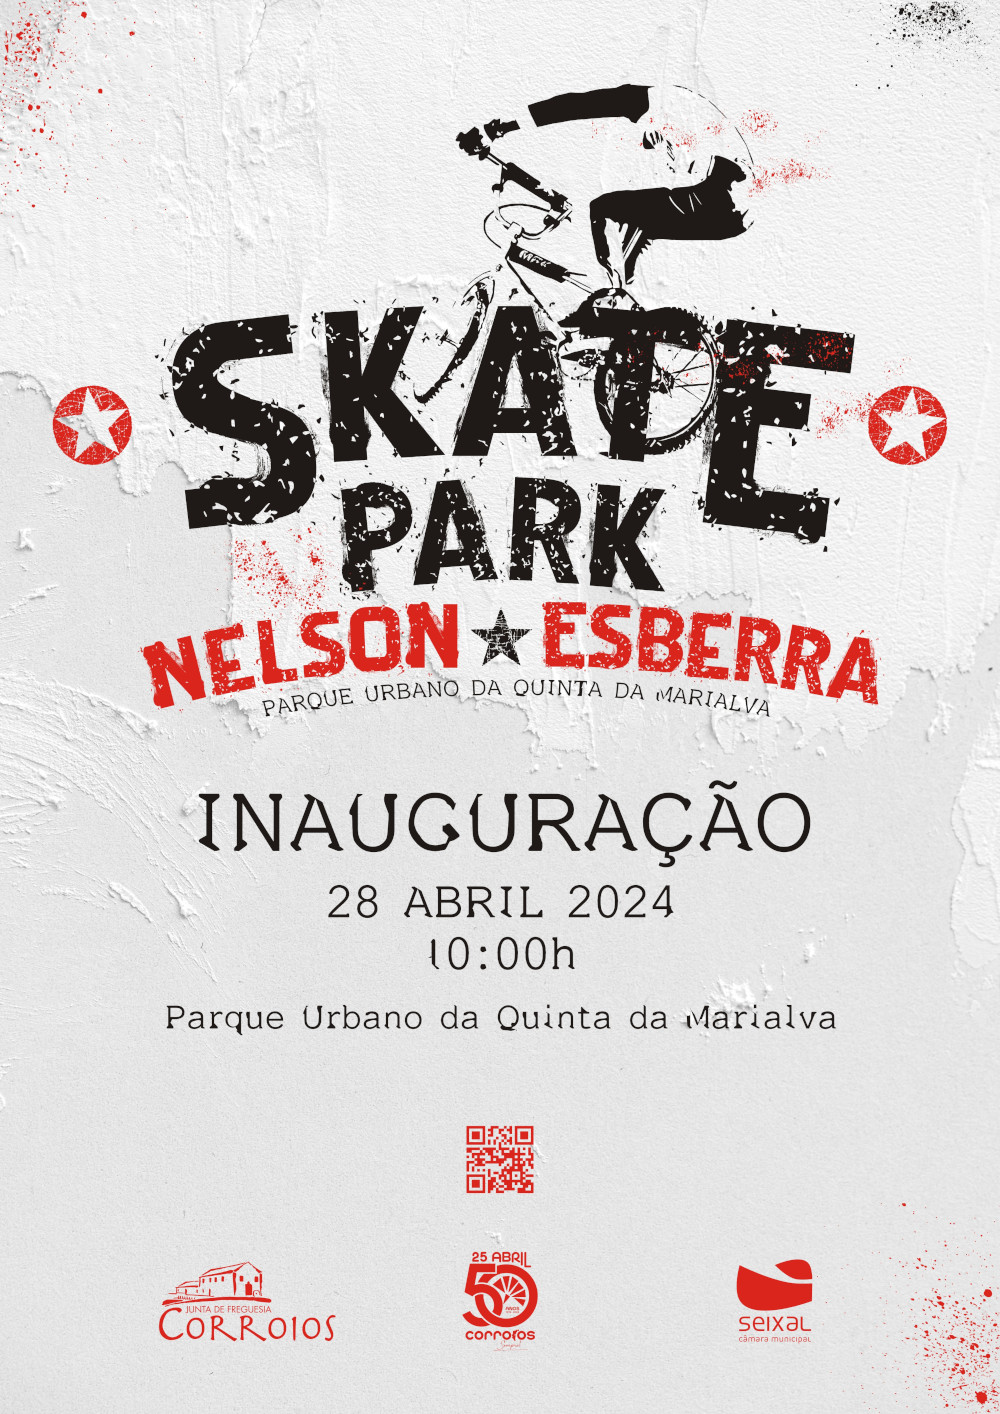 Skate Park - Nelson Esberra